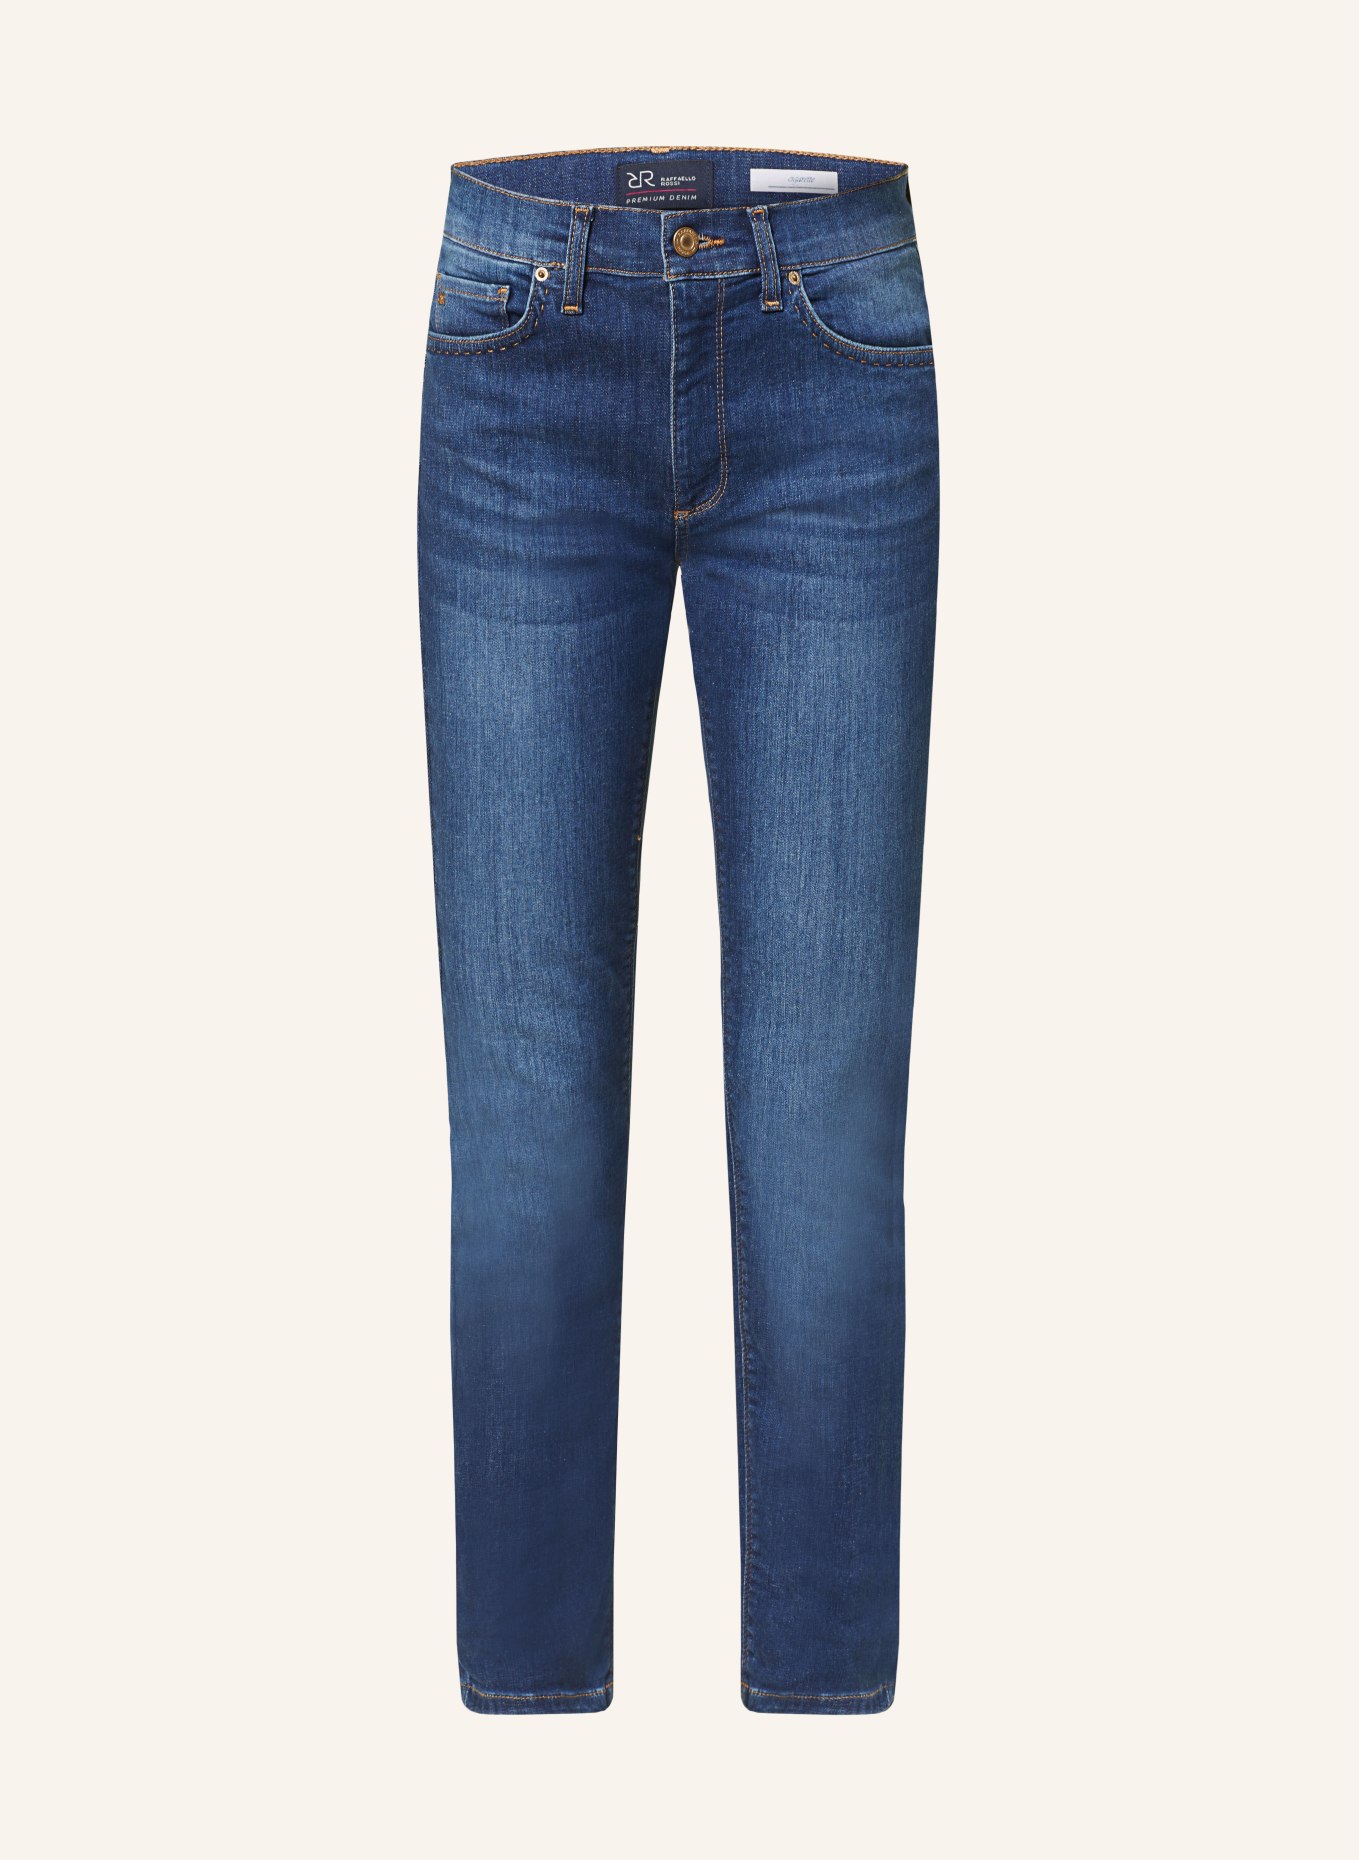 RAFFAELLO ROSSI 7/8-Jeans SUZY, Farbe: 847 jeansblue (Bild 1)